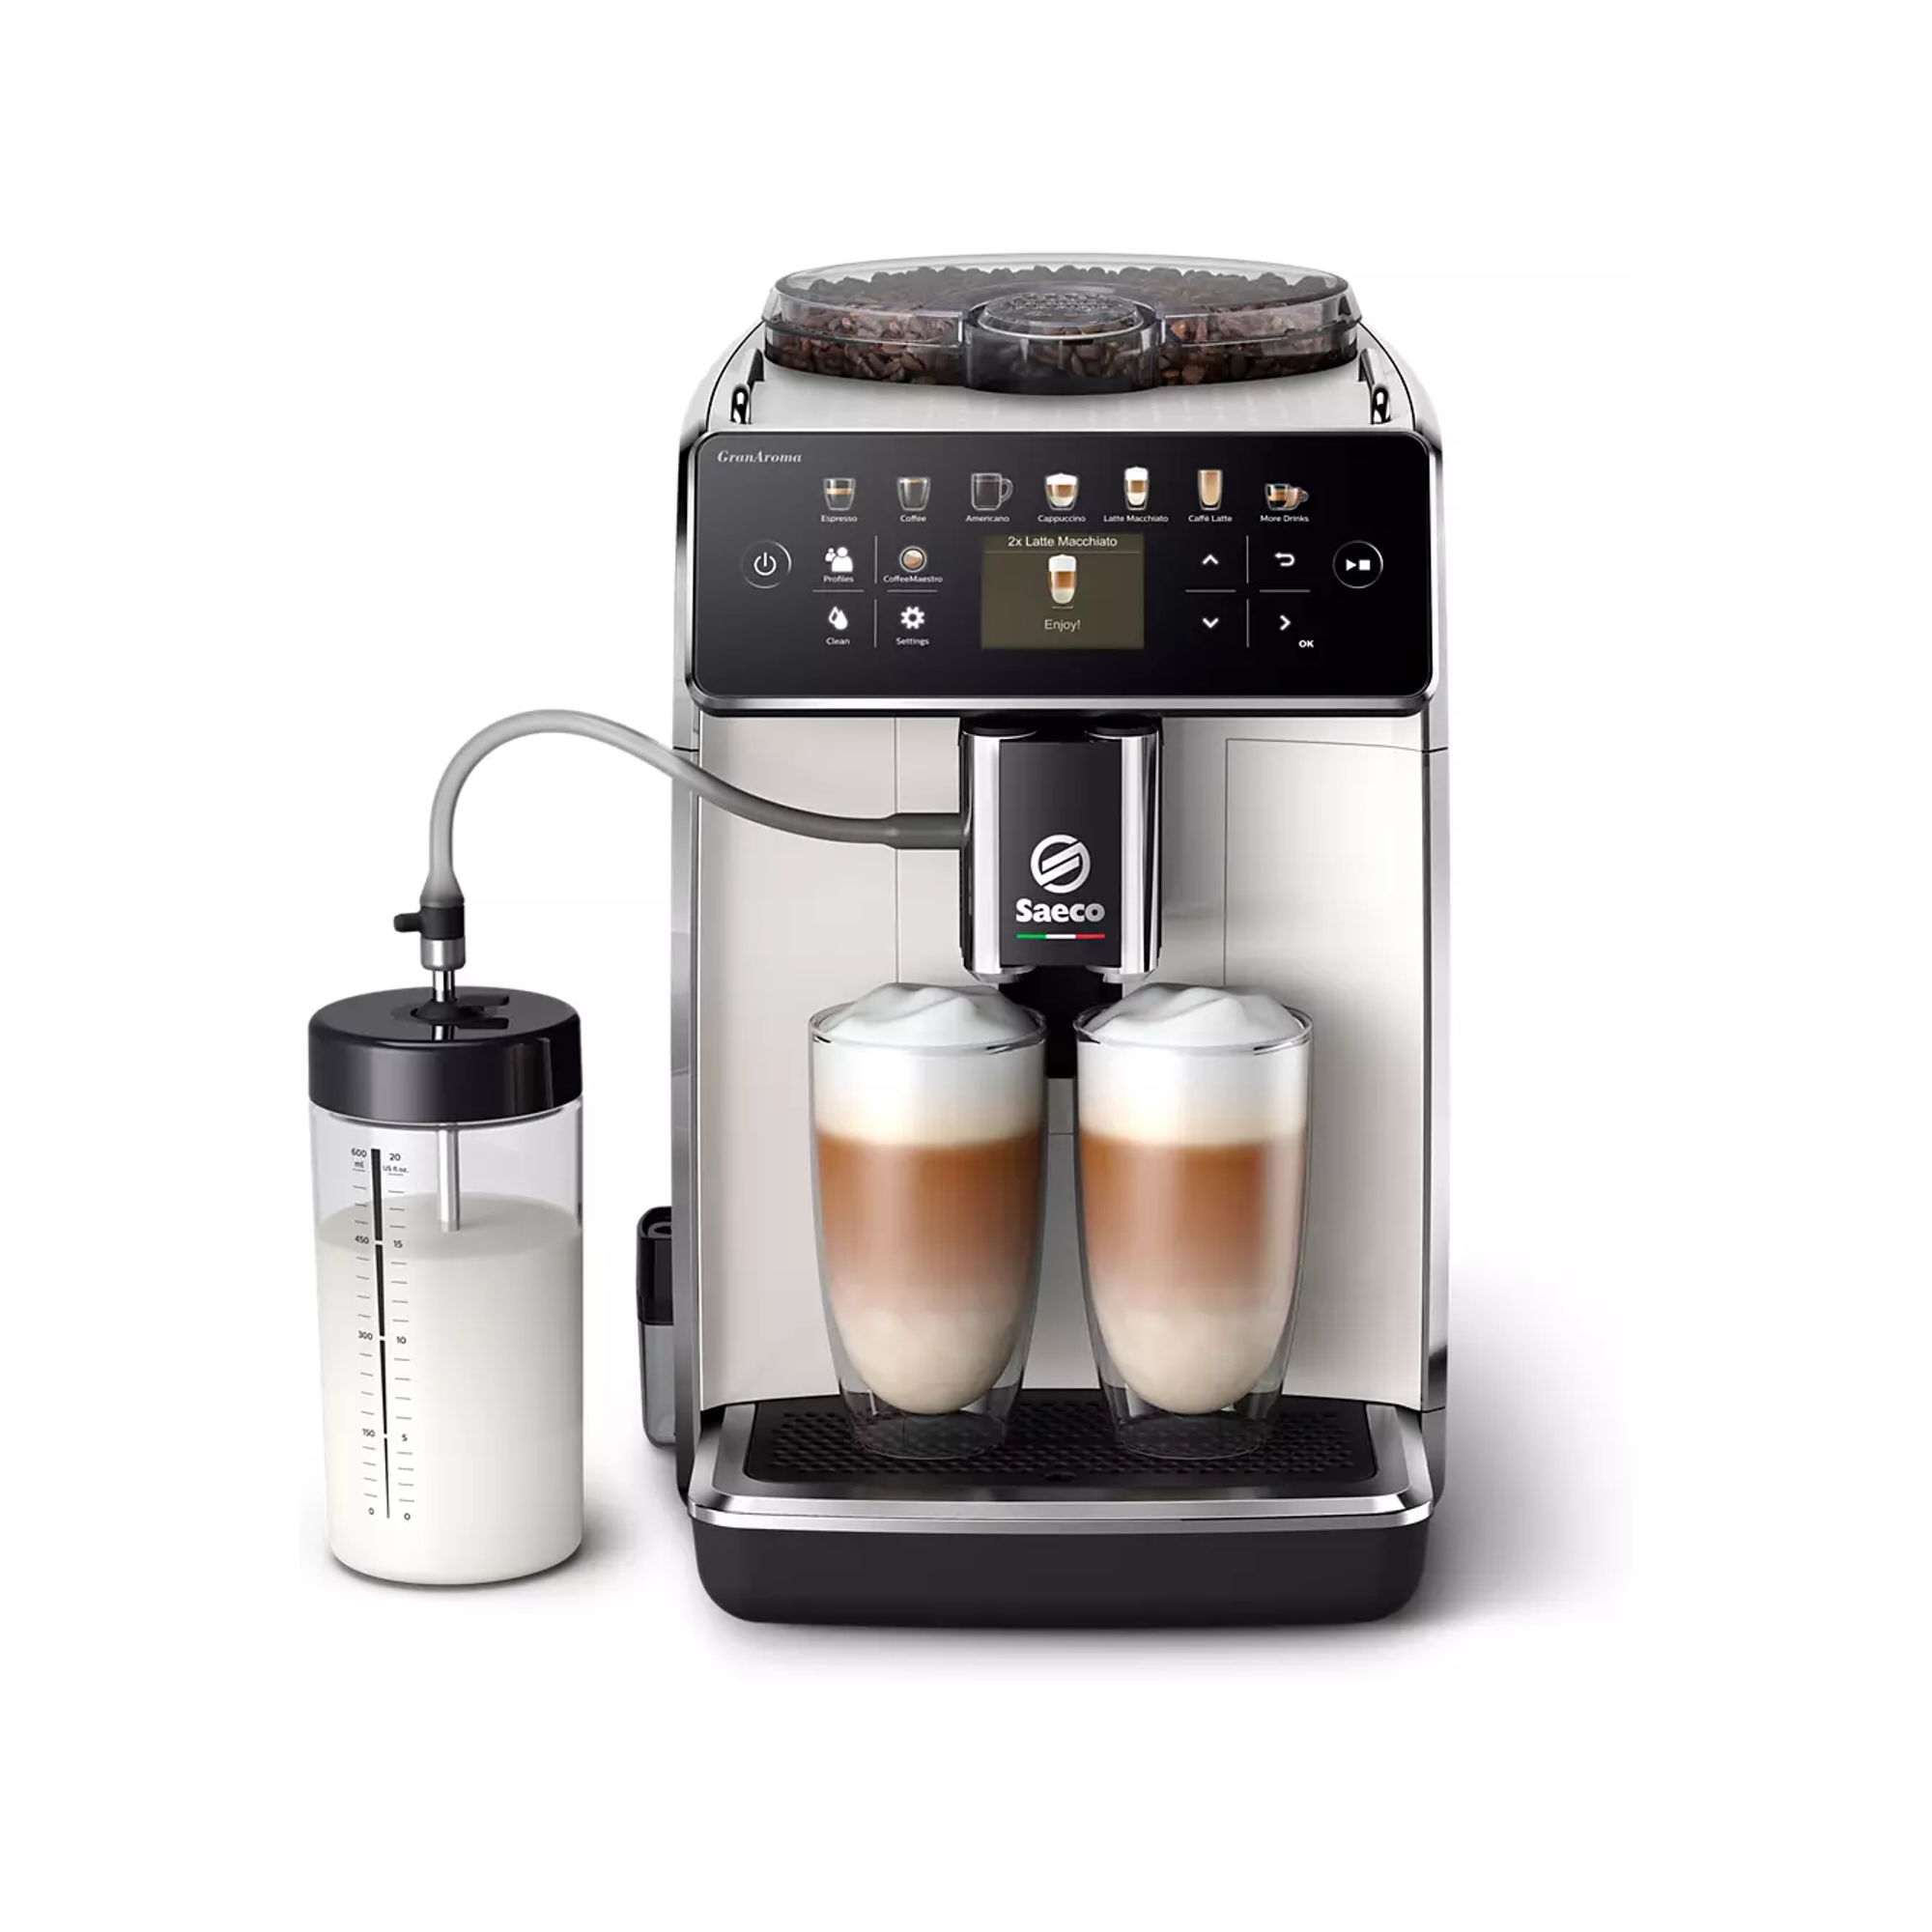 Saeco GranAroma Fully Automatic Espresso Machine - White